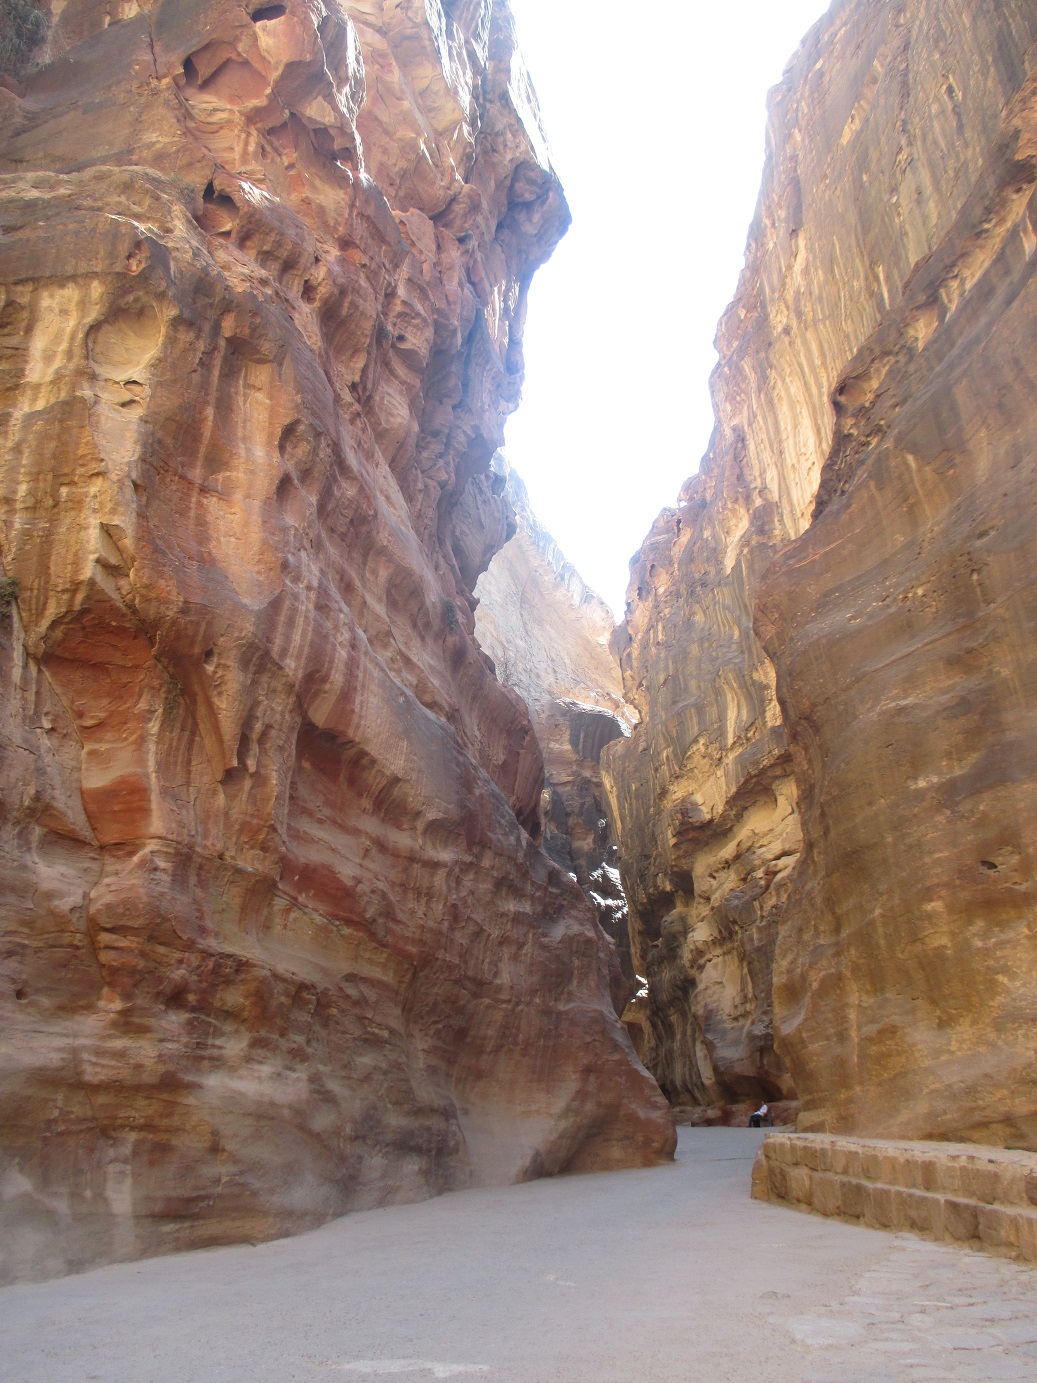 De siq is een pad tussen enorme rotswanden van makkelijk 20 meter hoog.